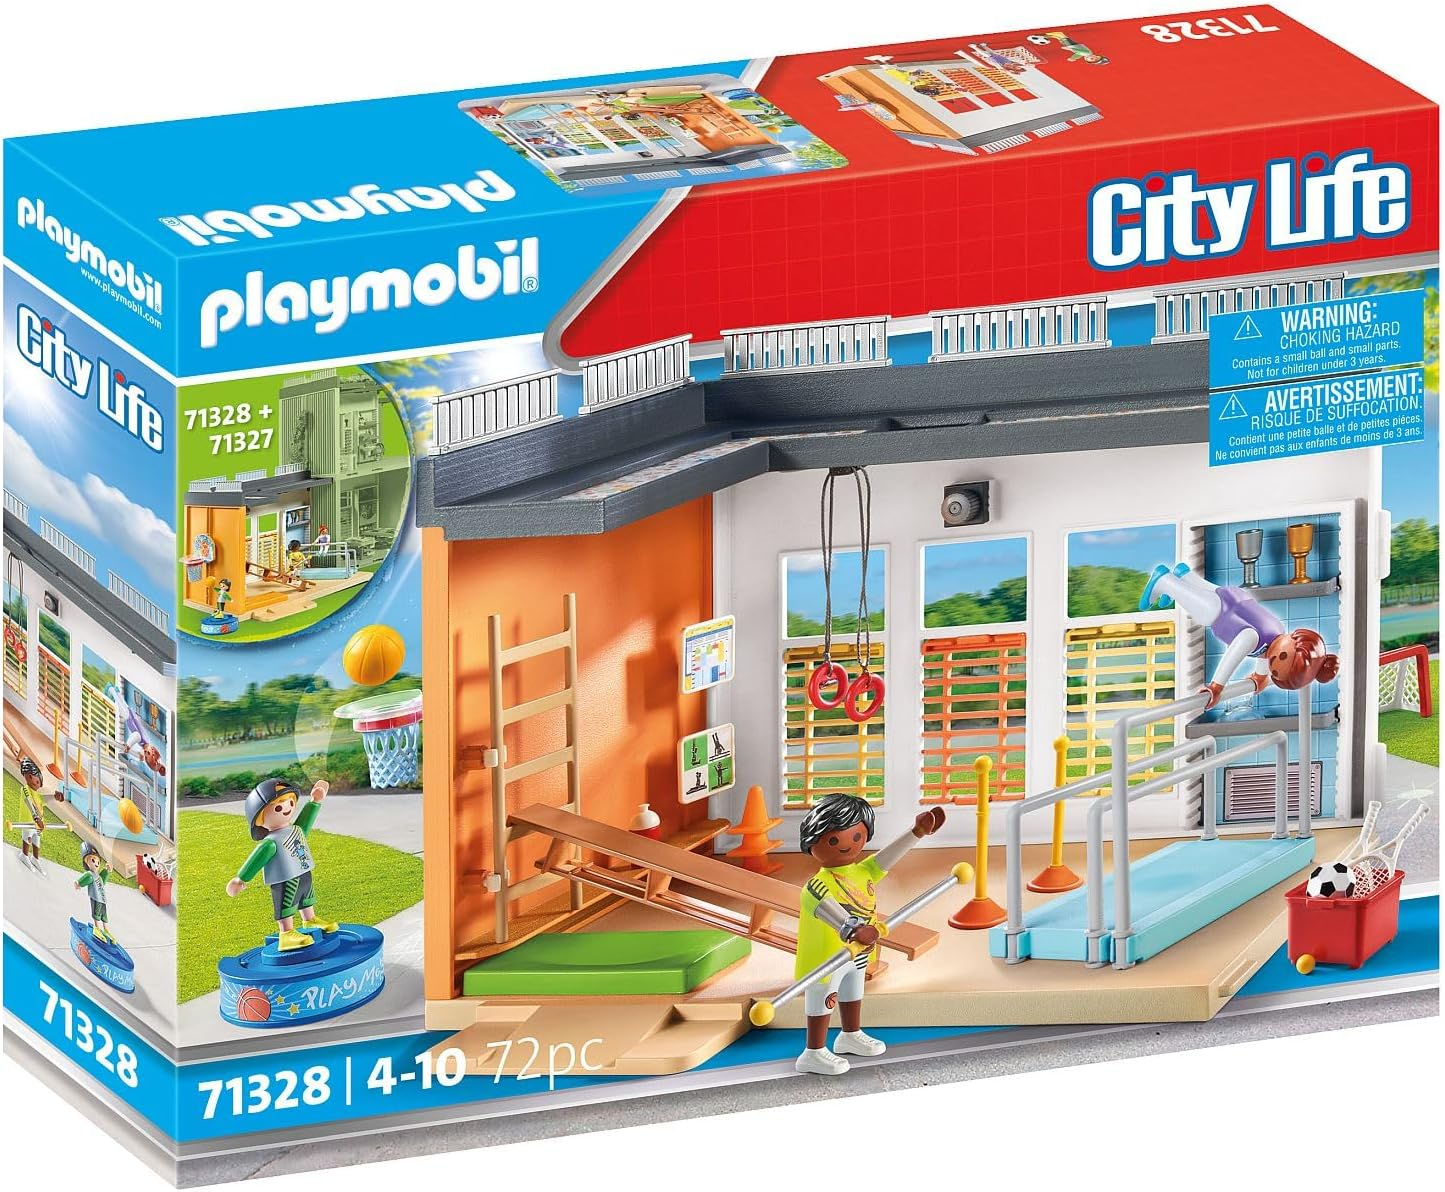 Playmobil 71328 Extensão do ginásio City Life, com cesta de basquete, bastões de slalom, gol de futebol e muito mais, brinquedo educativo, dramatização divertida e imaginativa, conjuntos de jogos adequados para crianças de 4 anos ou mais